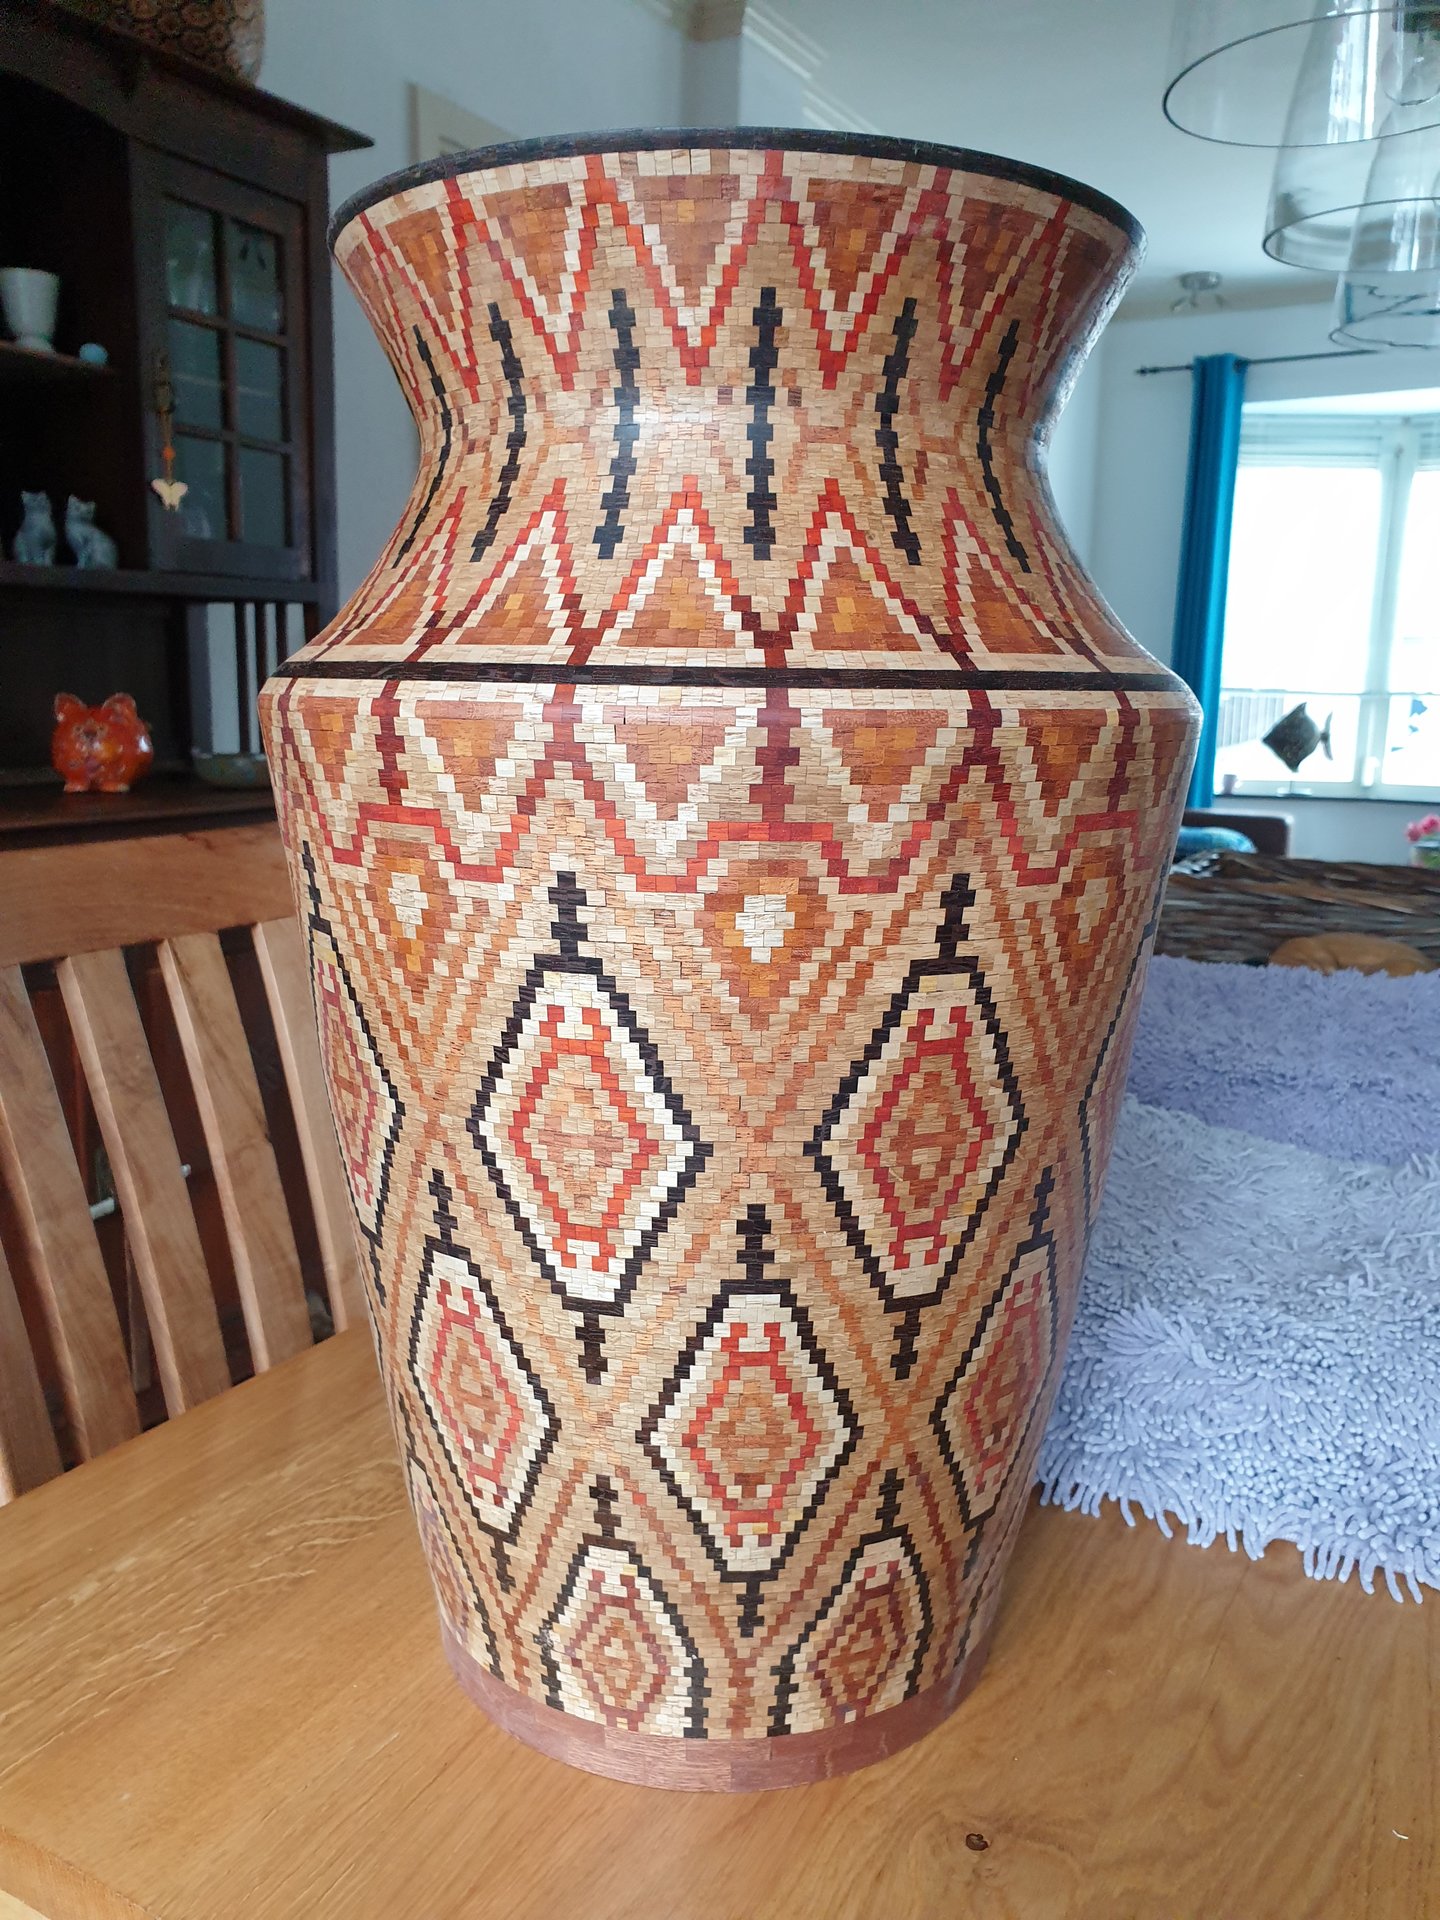 segmented vase 17456 pieces